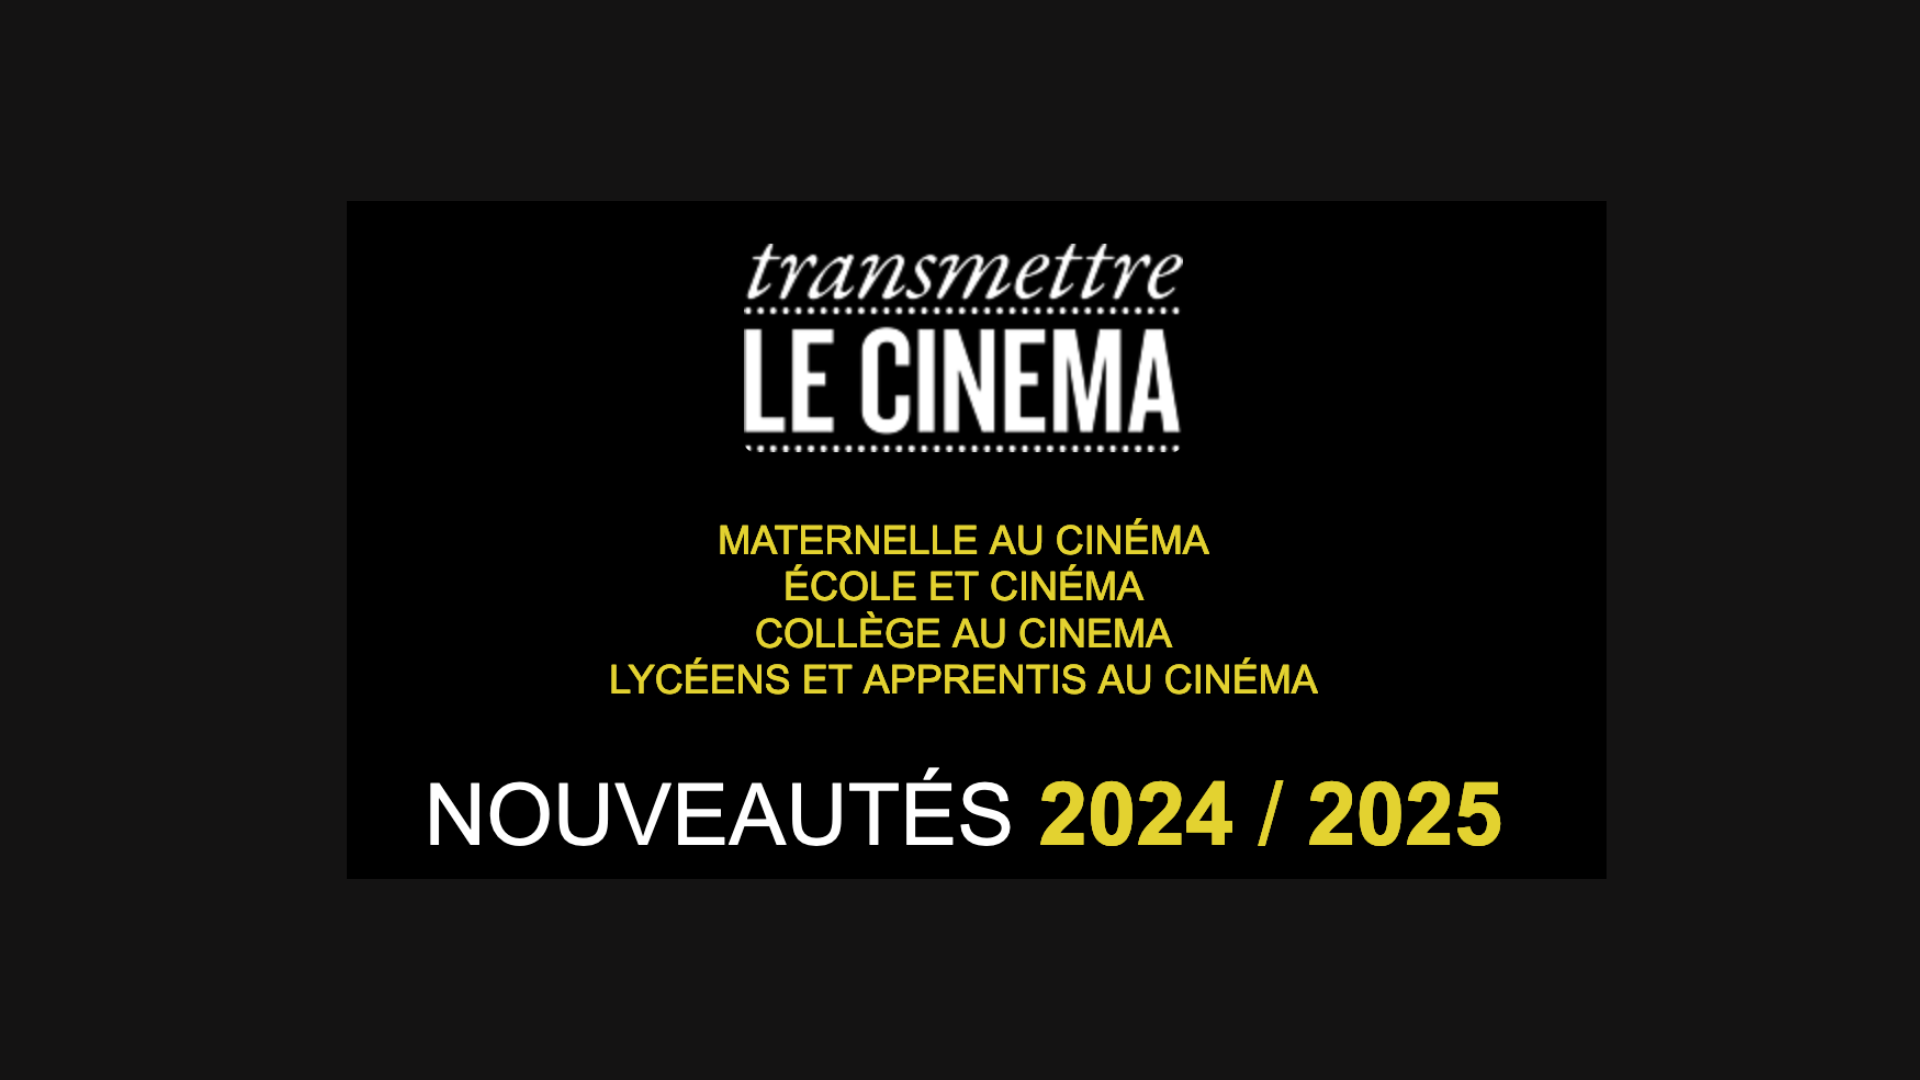 Transmettre le cinéma : les nouveautés 2024/2025